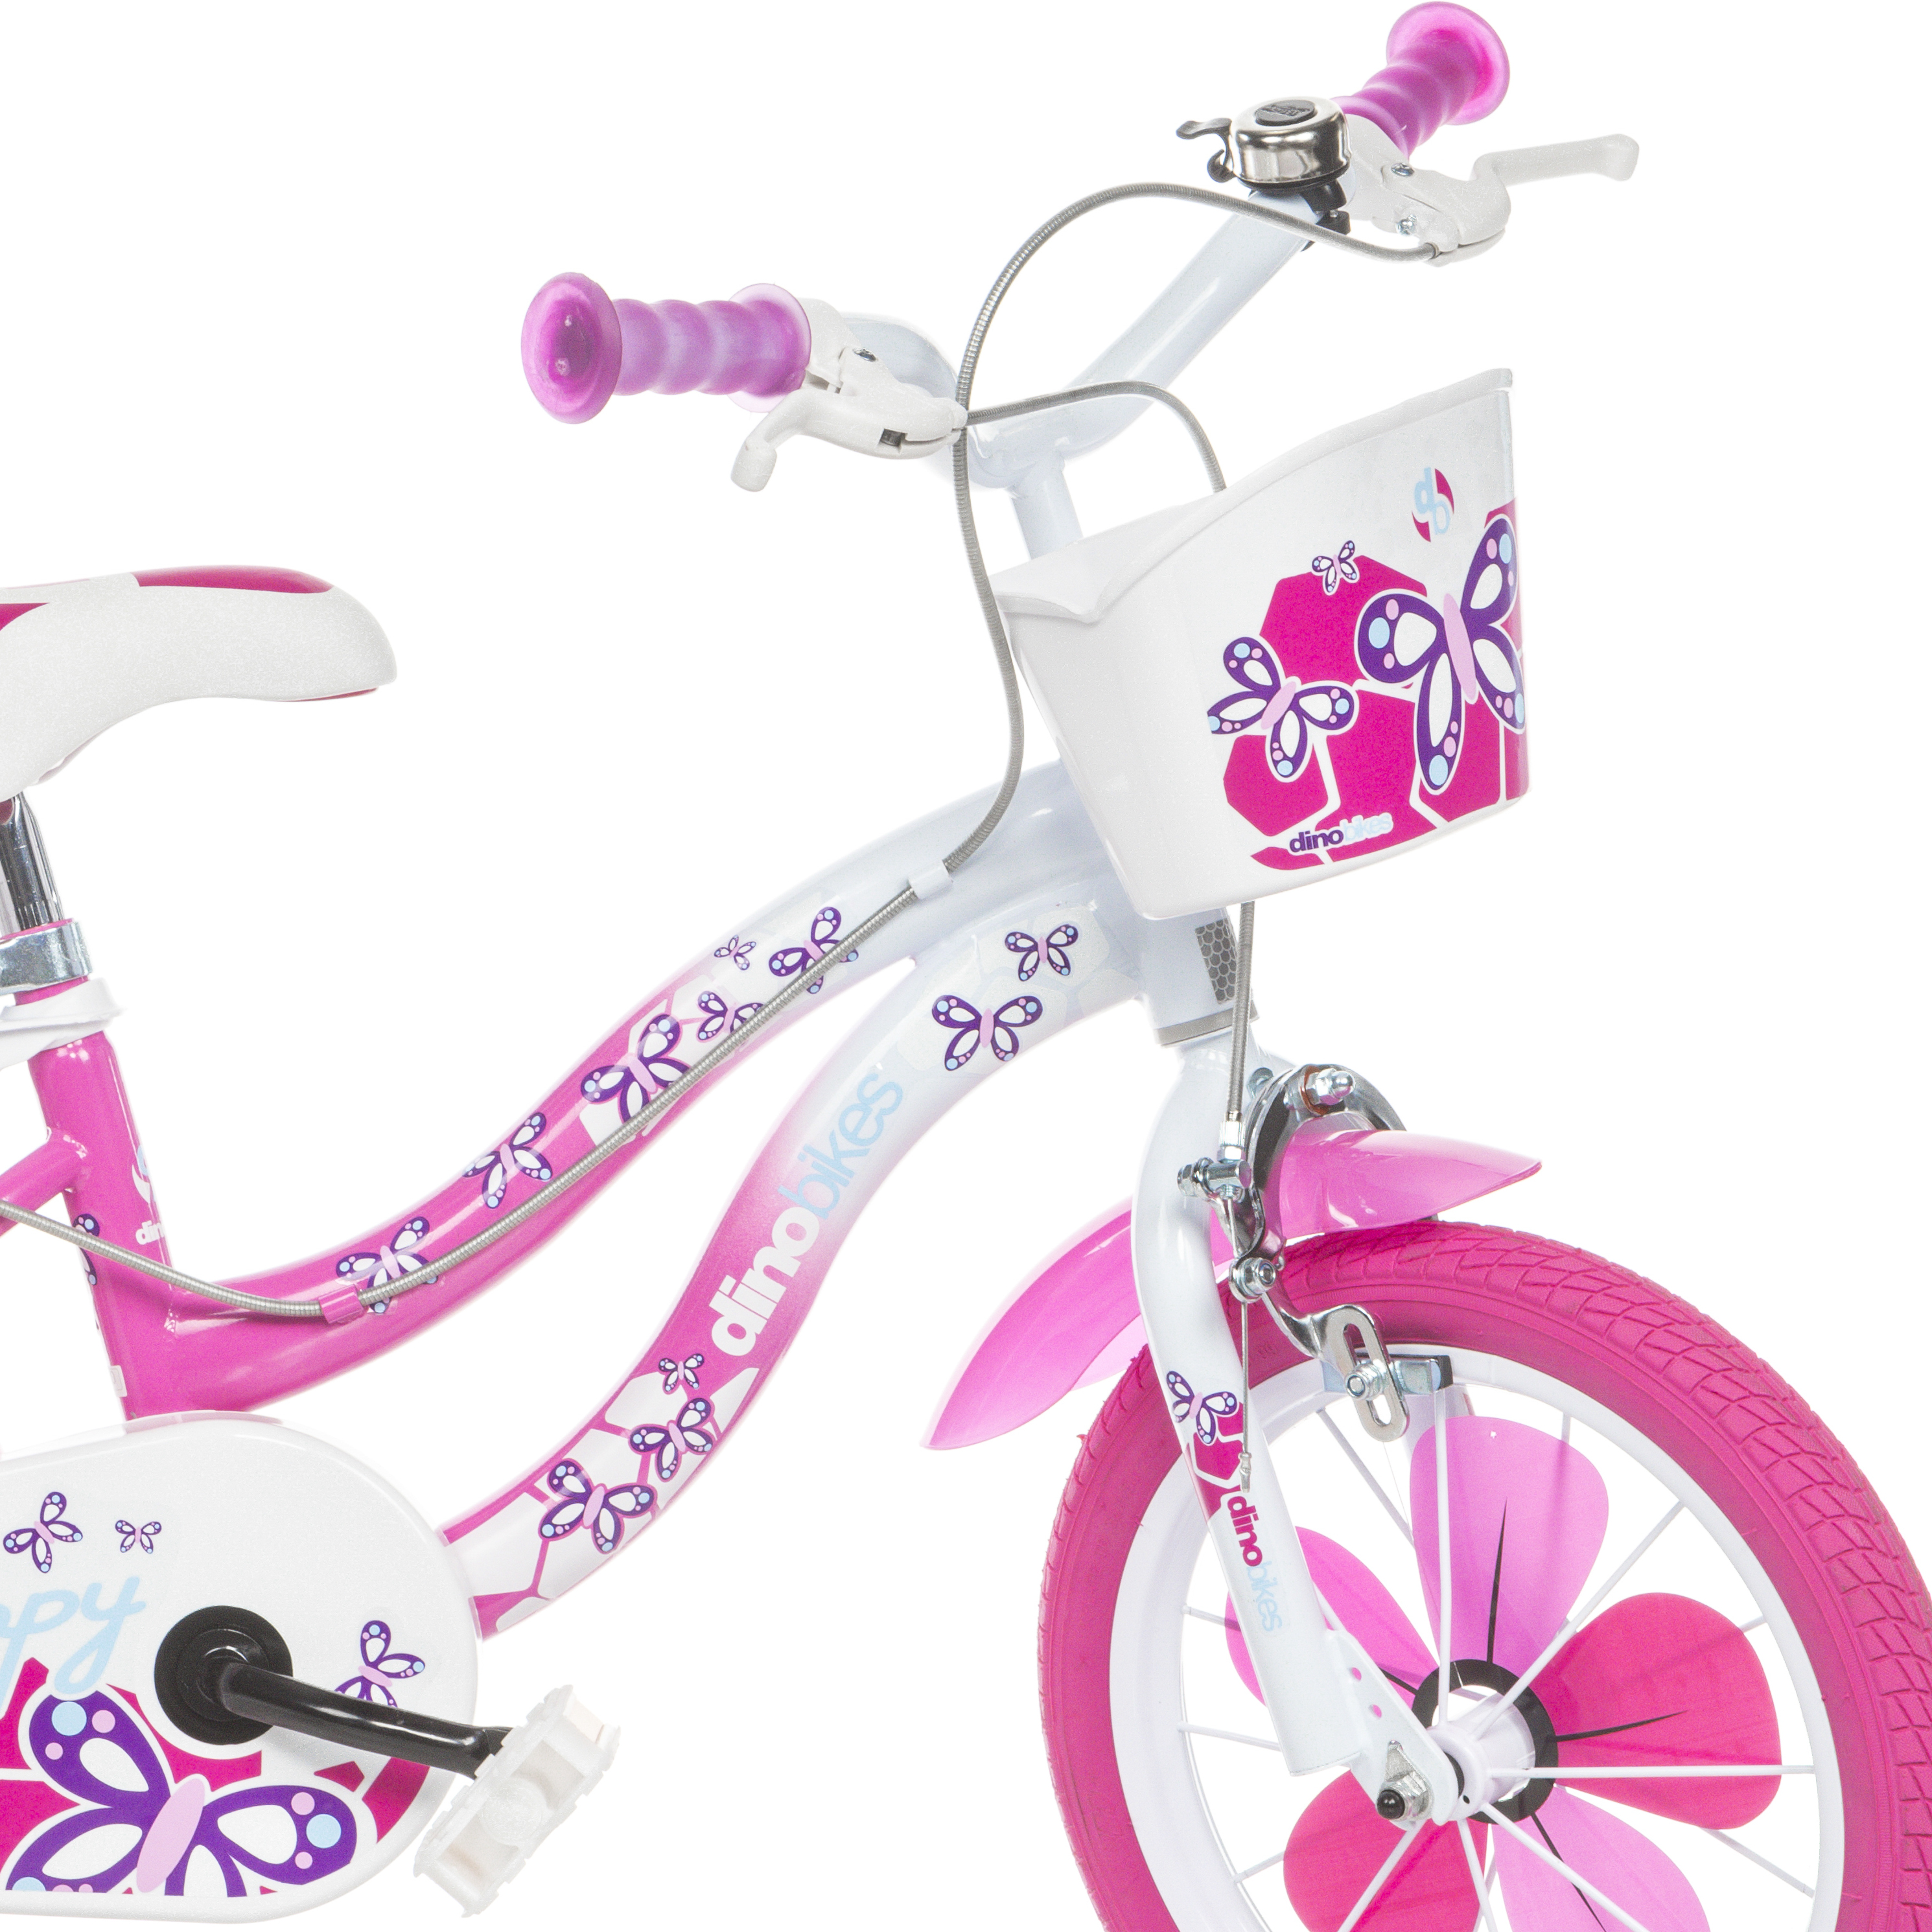 Bicicleta Niños 14 Pulgadas Flappy Rosado 4-6 Años